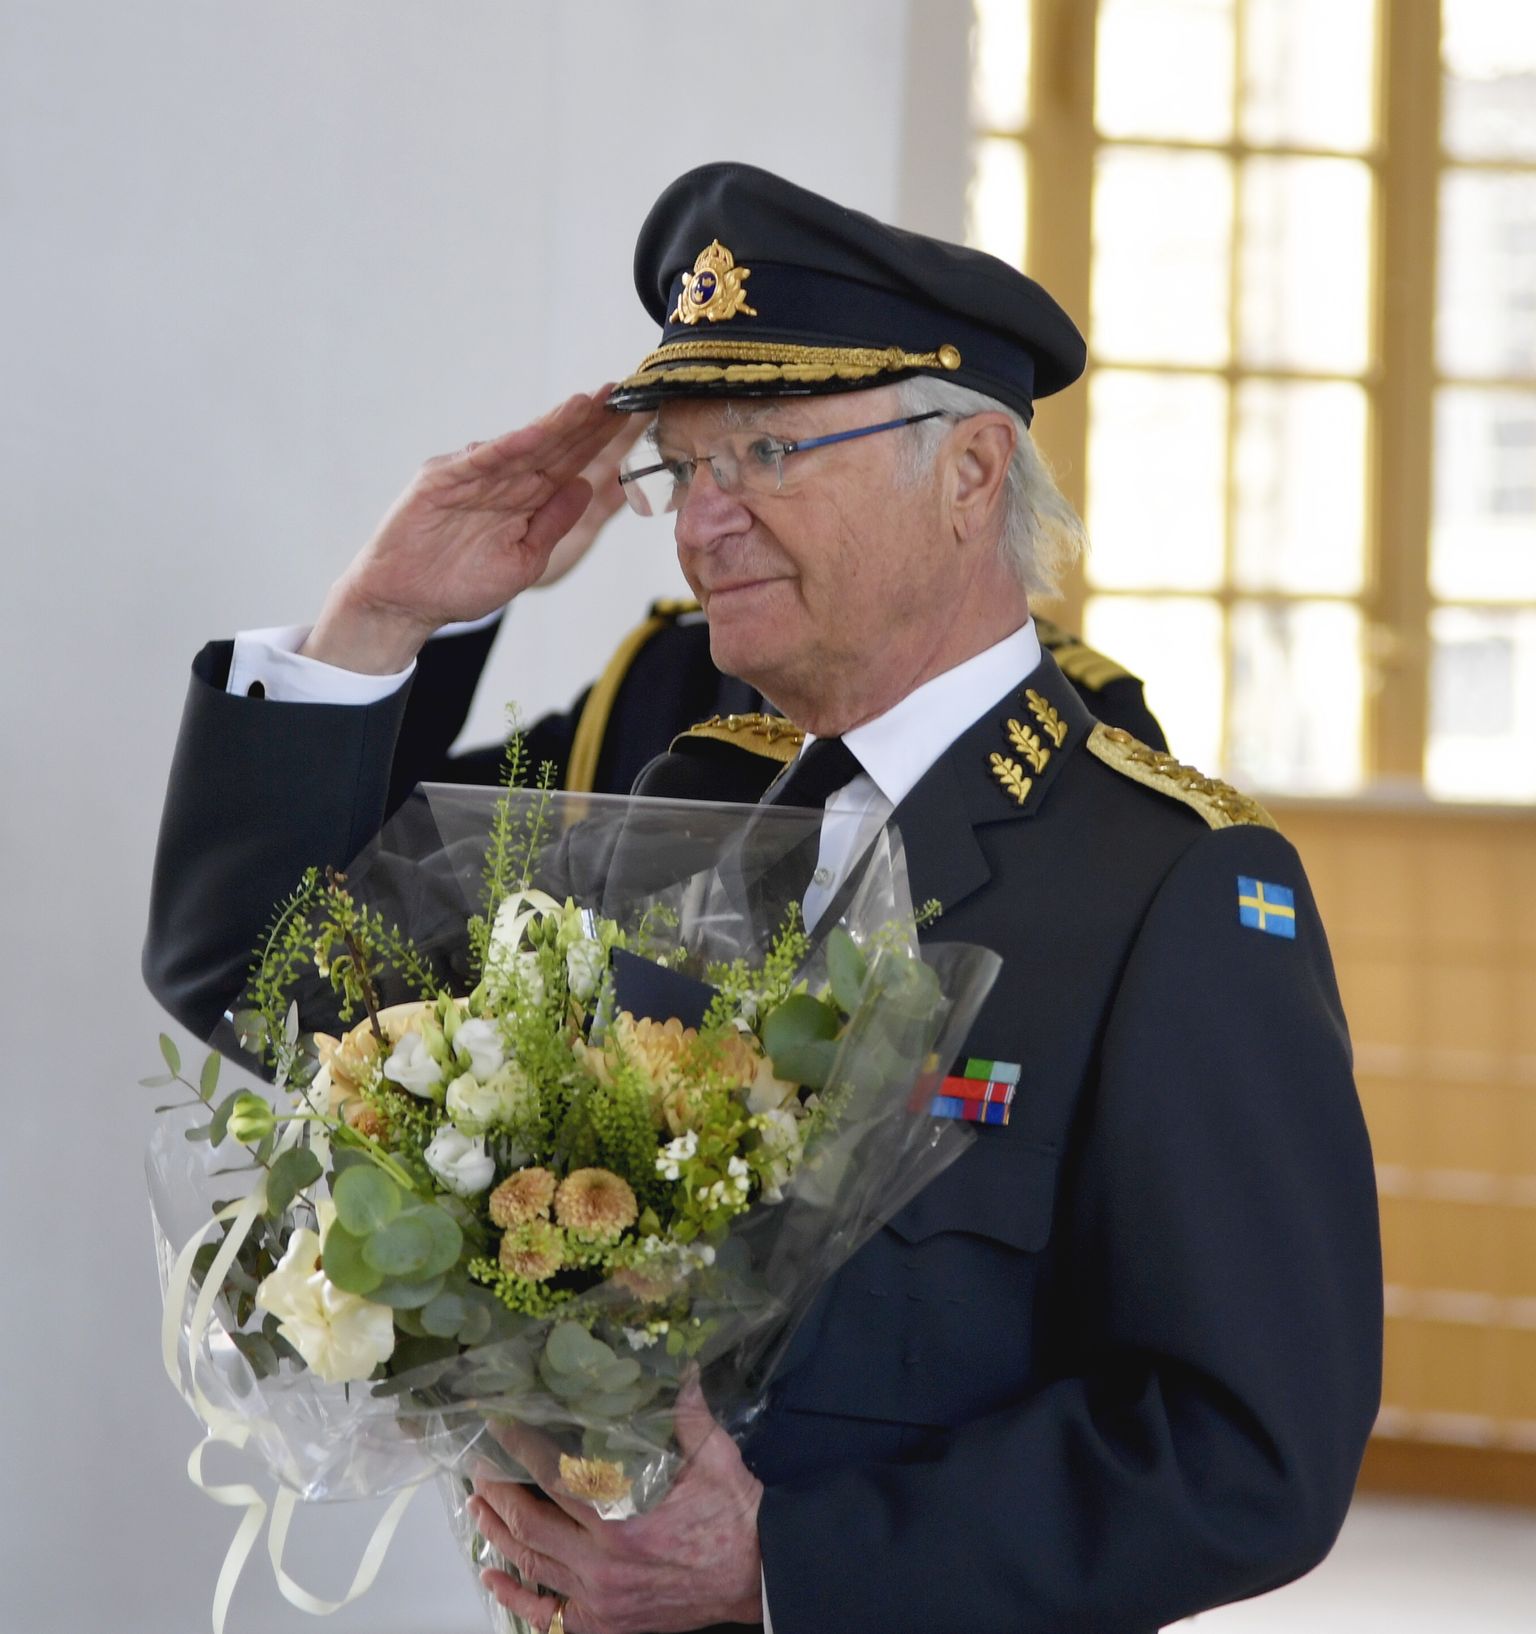 Rootsi kuningas Carl XVI Gustaf sai 75. sünnipäeva puhul lilli. Pilt on tehtud 30. aprilil 2021 Stockholmis kuningalossis